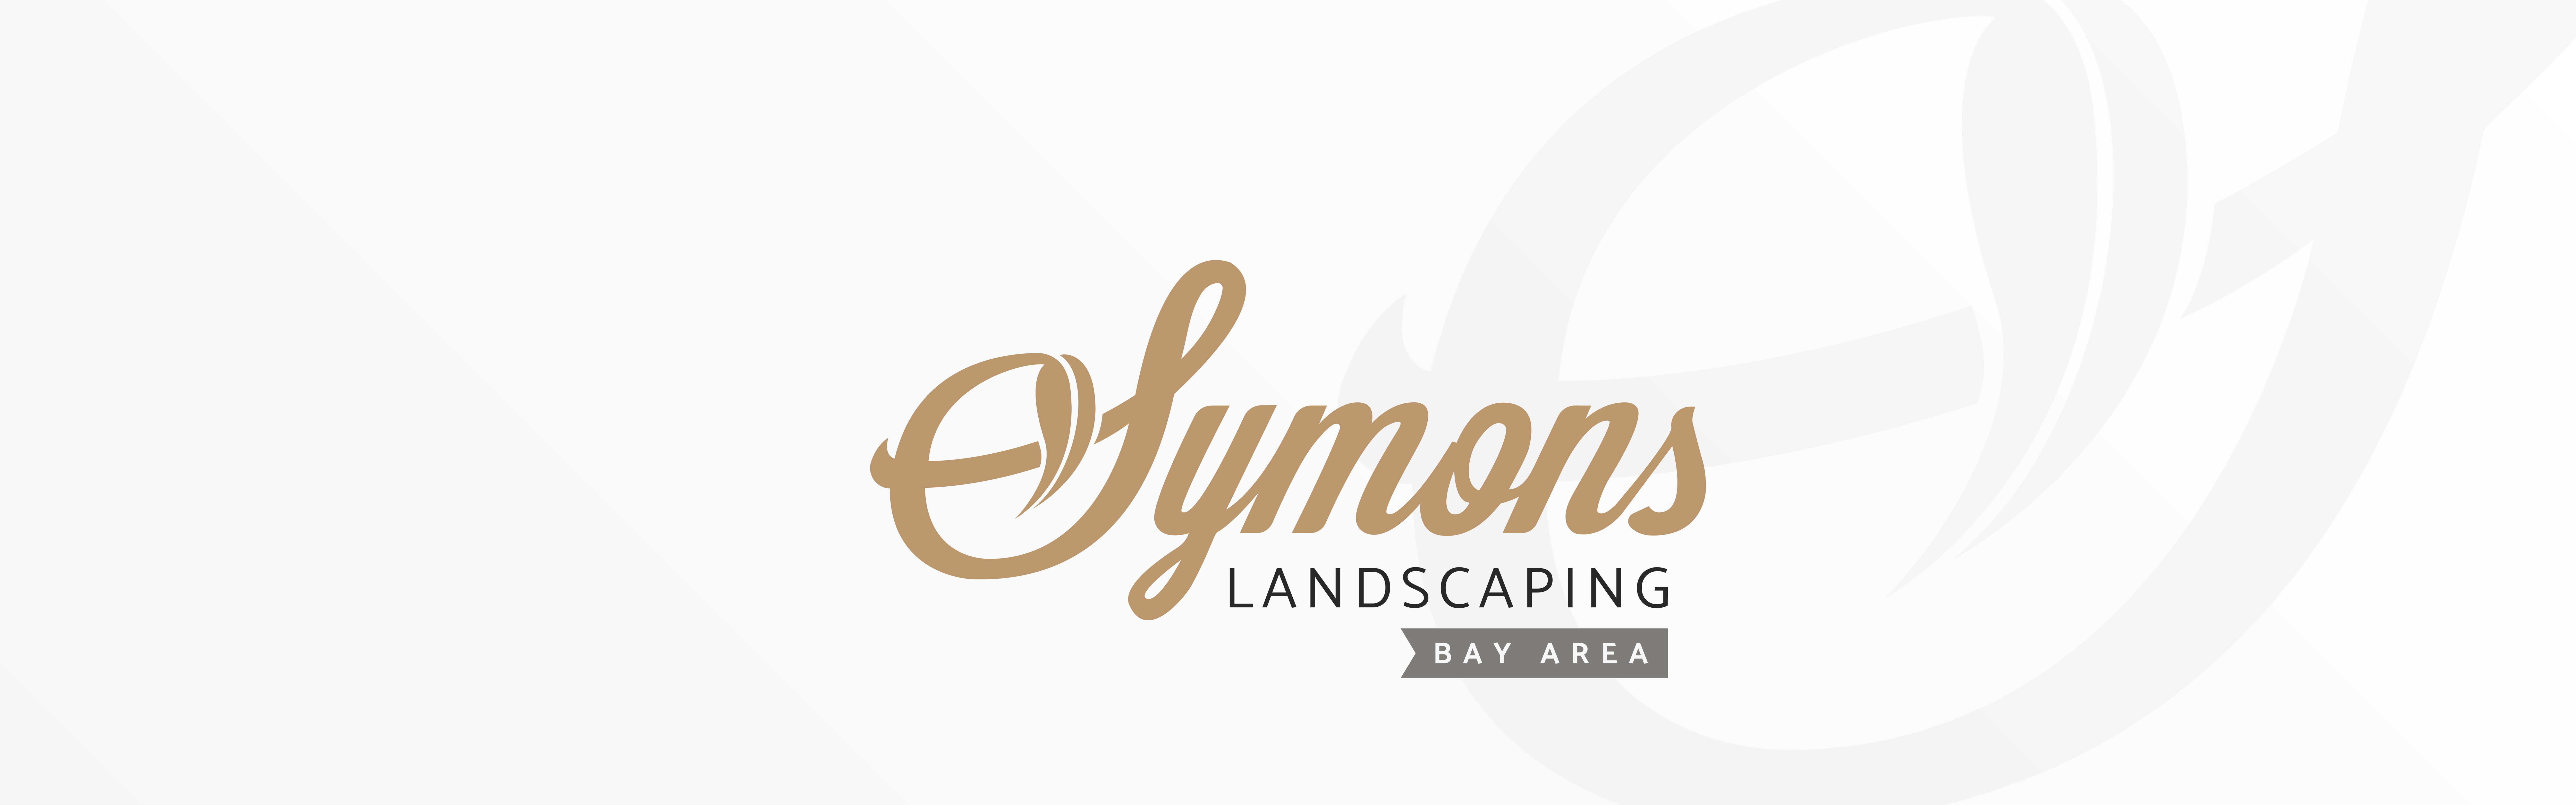 Symons Landscaping logo design